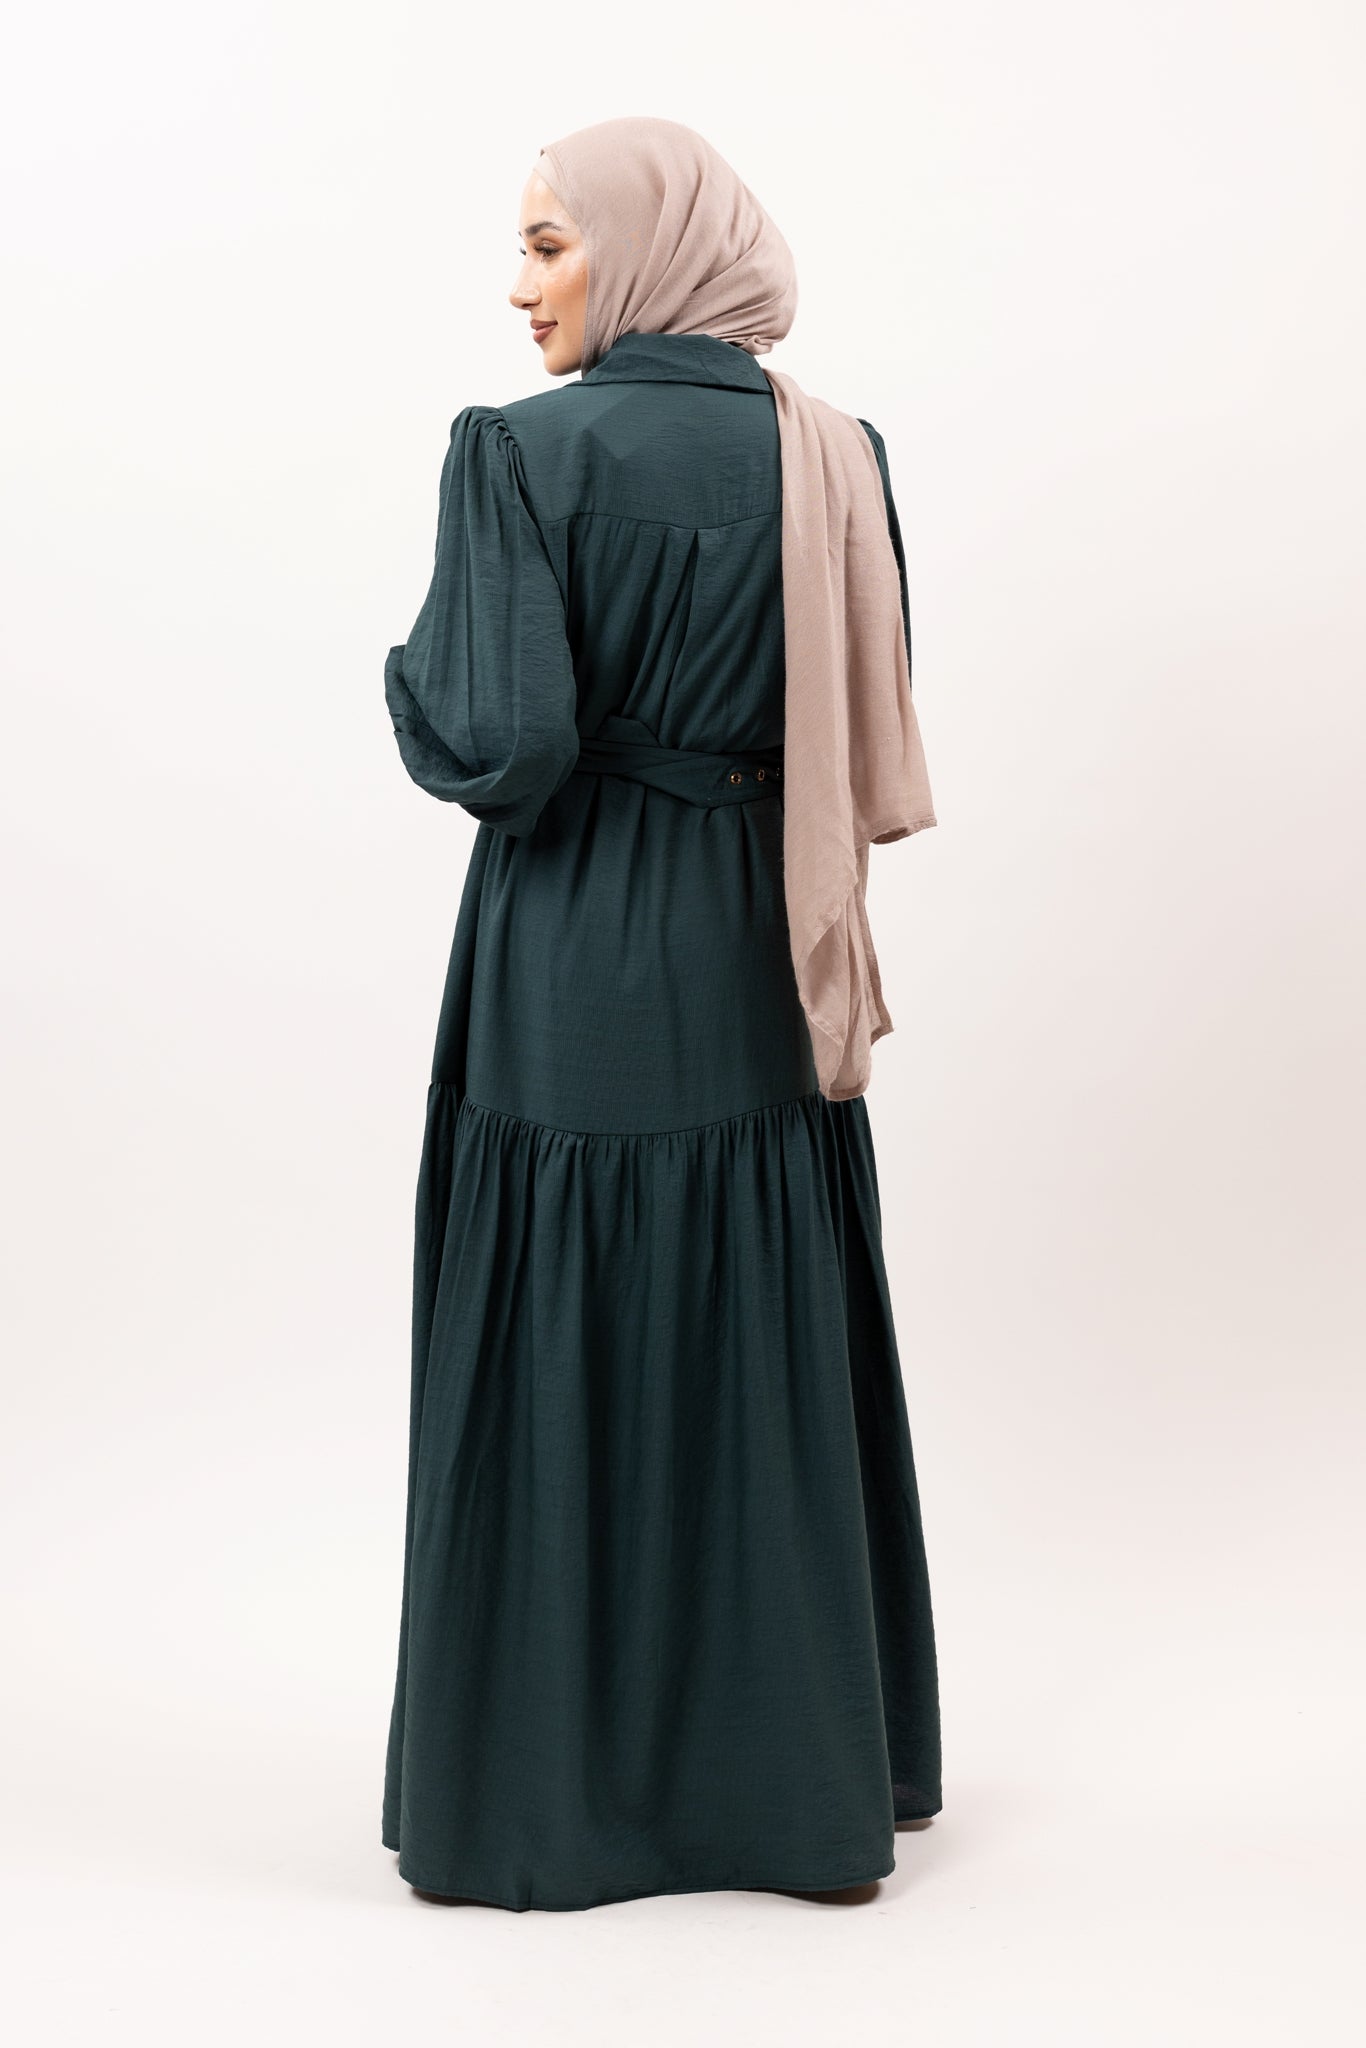 35504-TEAL-dress-abaya